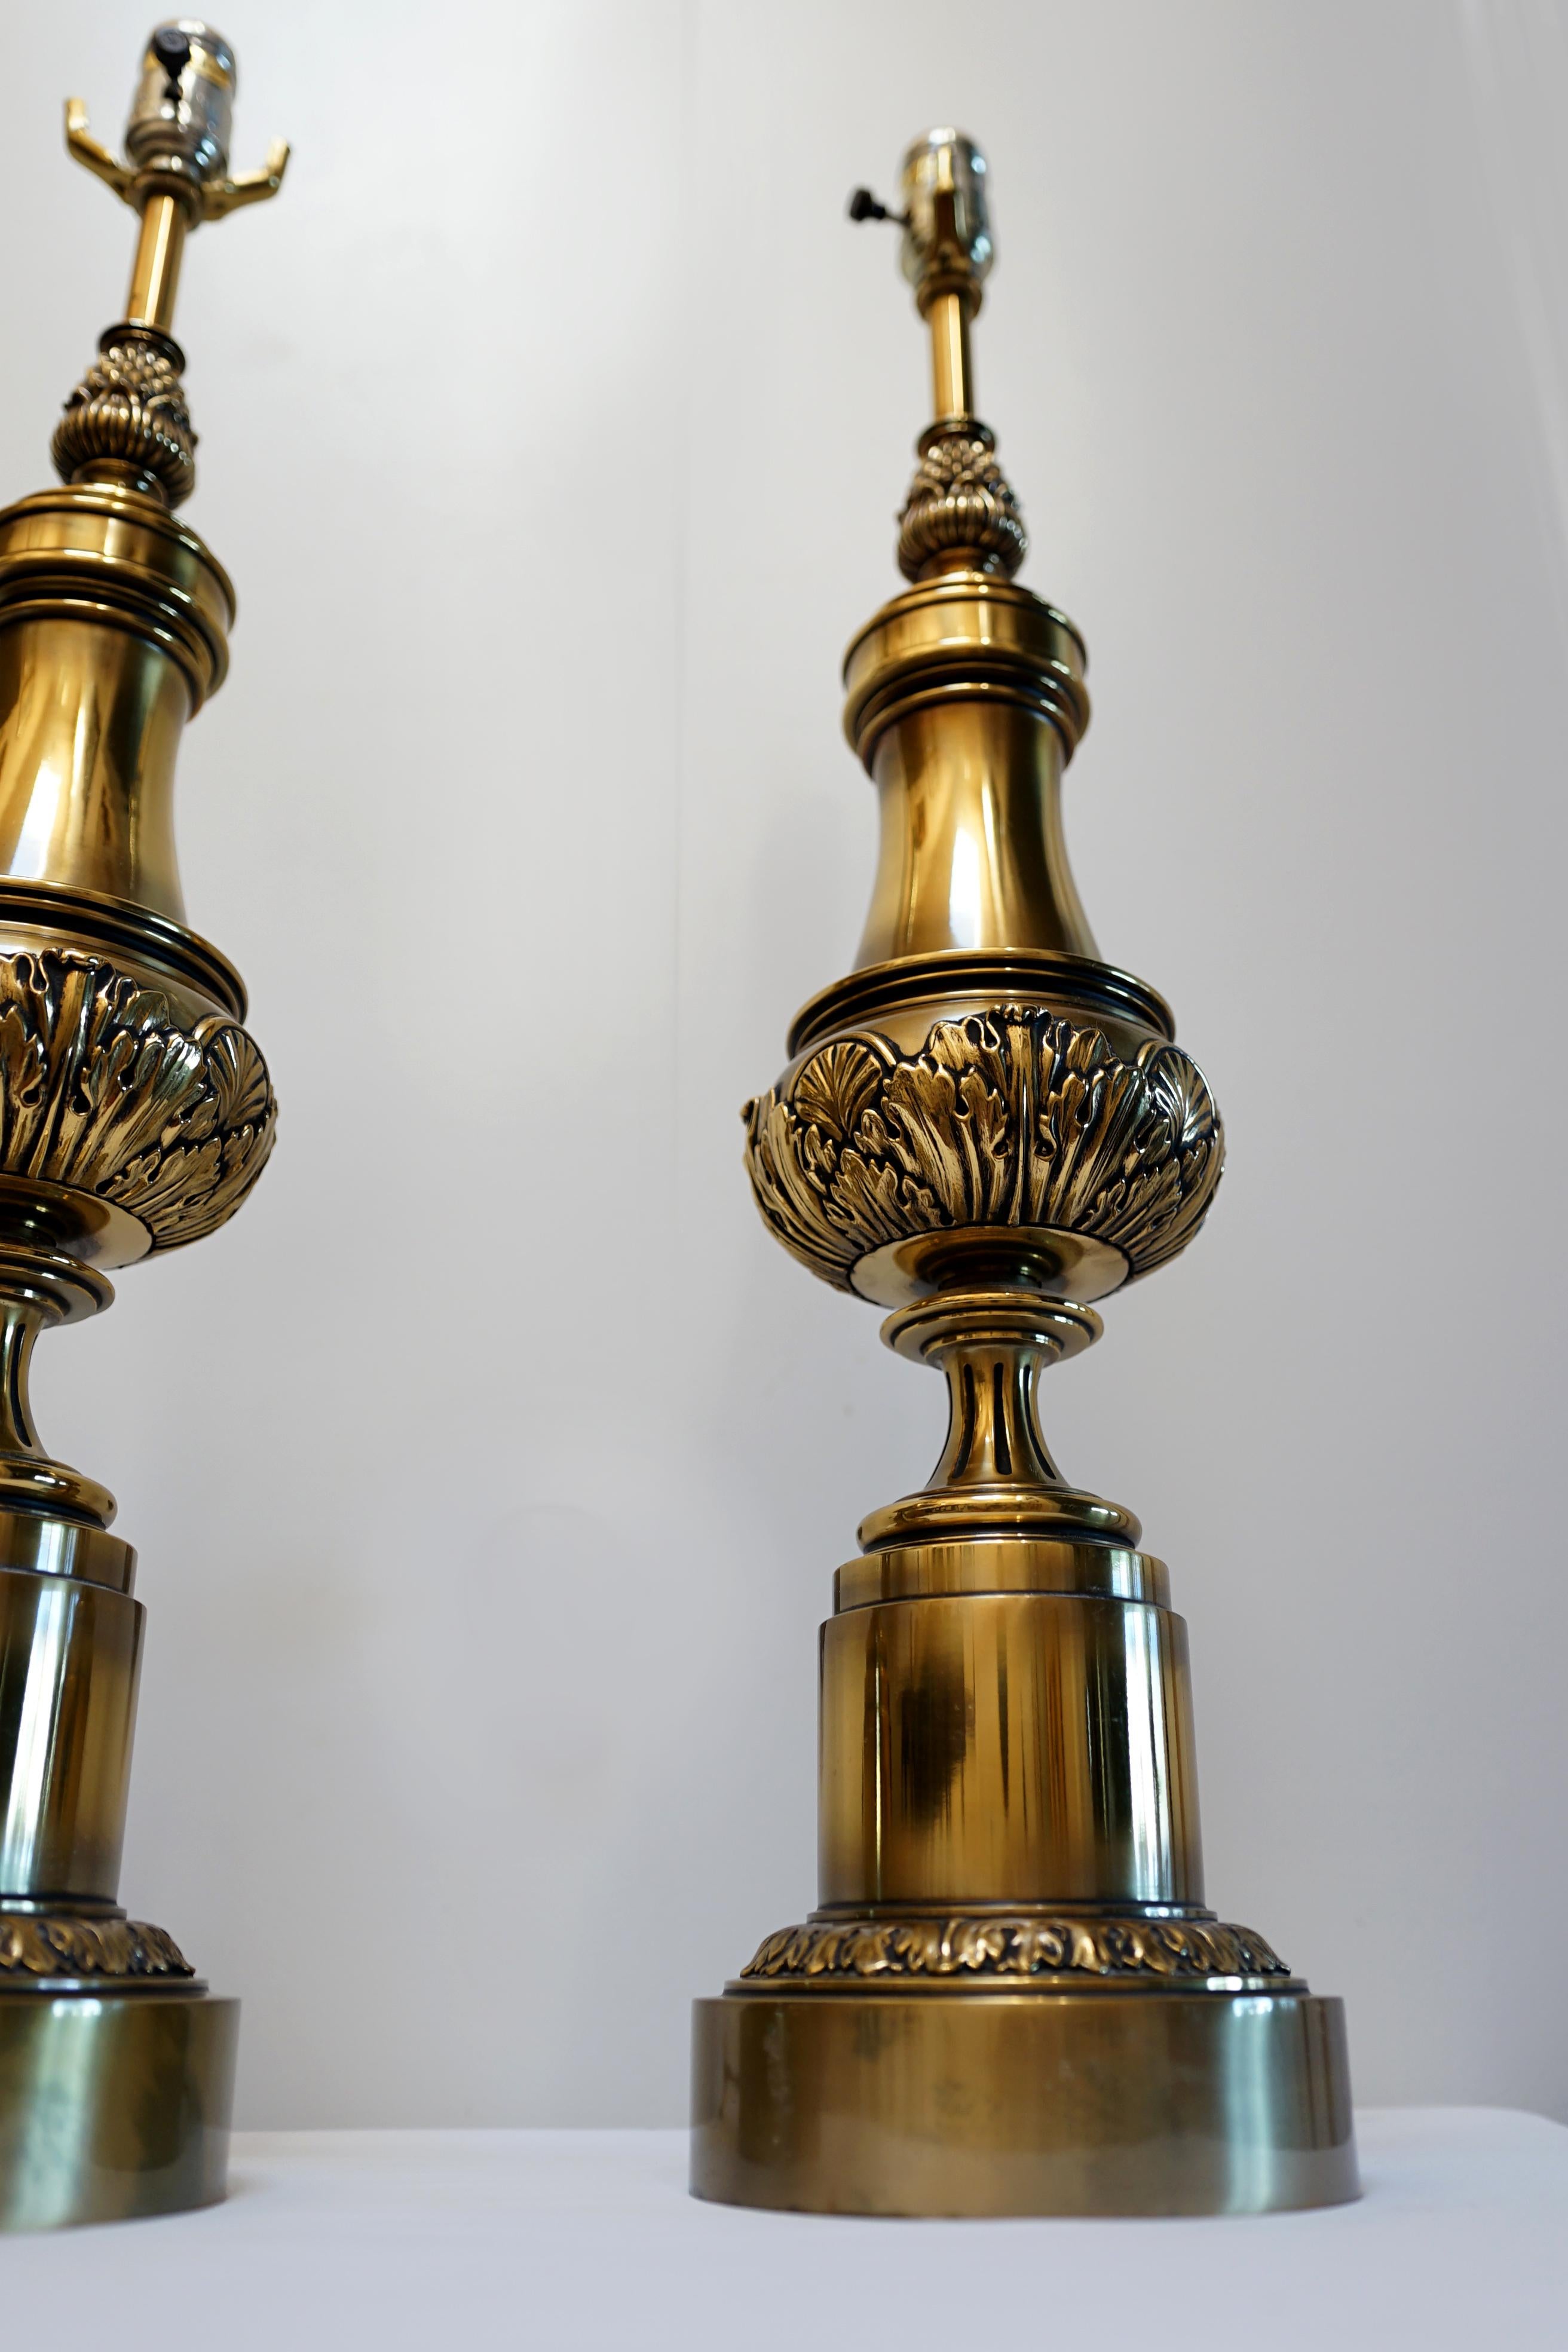 Il s'agit d'une paire de lampes Stiffel extraordinaire par sa taille, son design et sa présence. Il s'agit d'une paire de lampes à colonne en laiton Stiffel datant du milieu ou de la fin du 20e siècle. Ils sont un atout pour la décoration. Il y a un